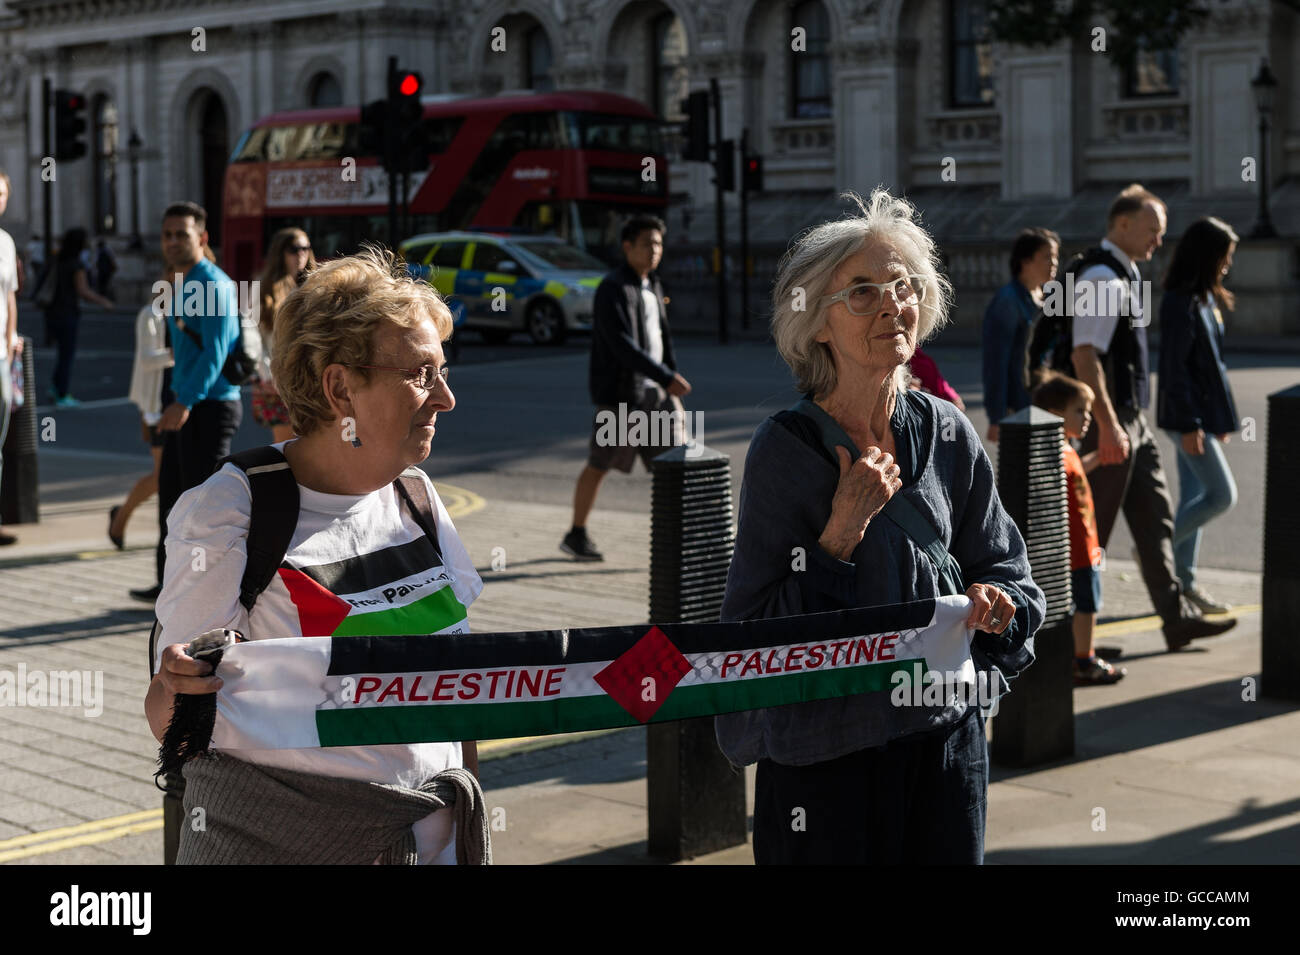 Londra, Regno Unito. 8 luglio 2016. Una folla di dimostranti si sono riuniti di fronte a Downing Street a 'l assedio a Gaza' rally per chiedere la fine del commercio di armi tra il Regno Unito e Israele nonché per porre fine a Israele di dieci anni di occupazione di Gaza. Wiktor Szymanowicz/Alamy Live News Foto Stock